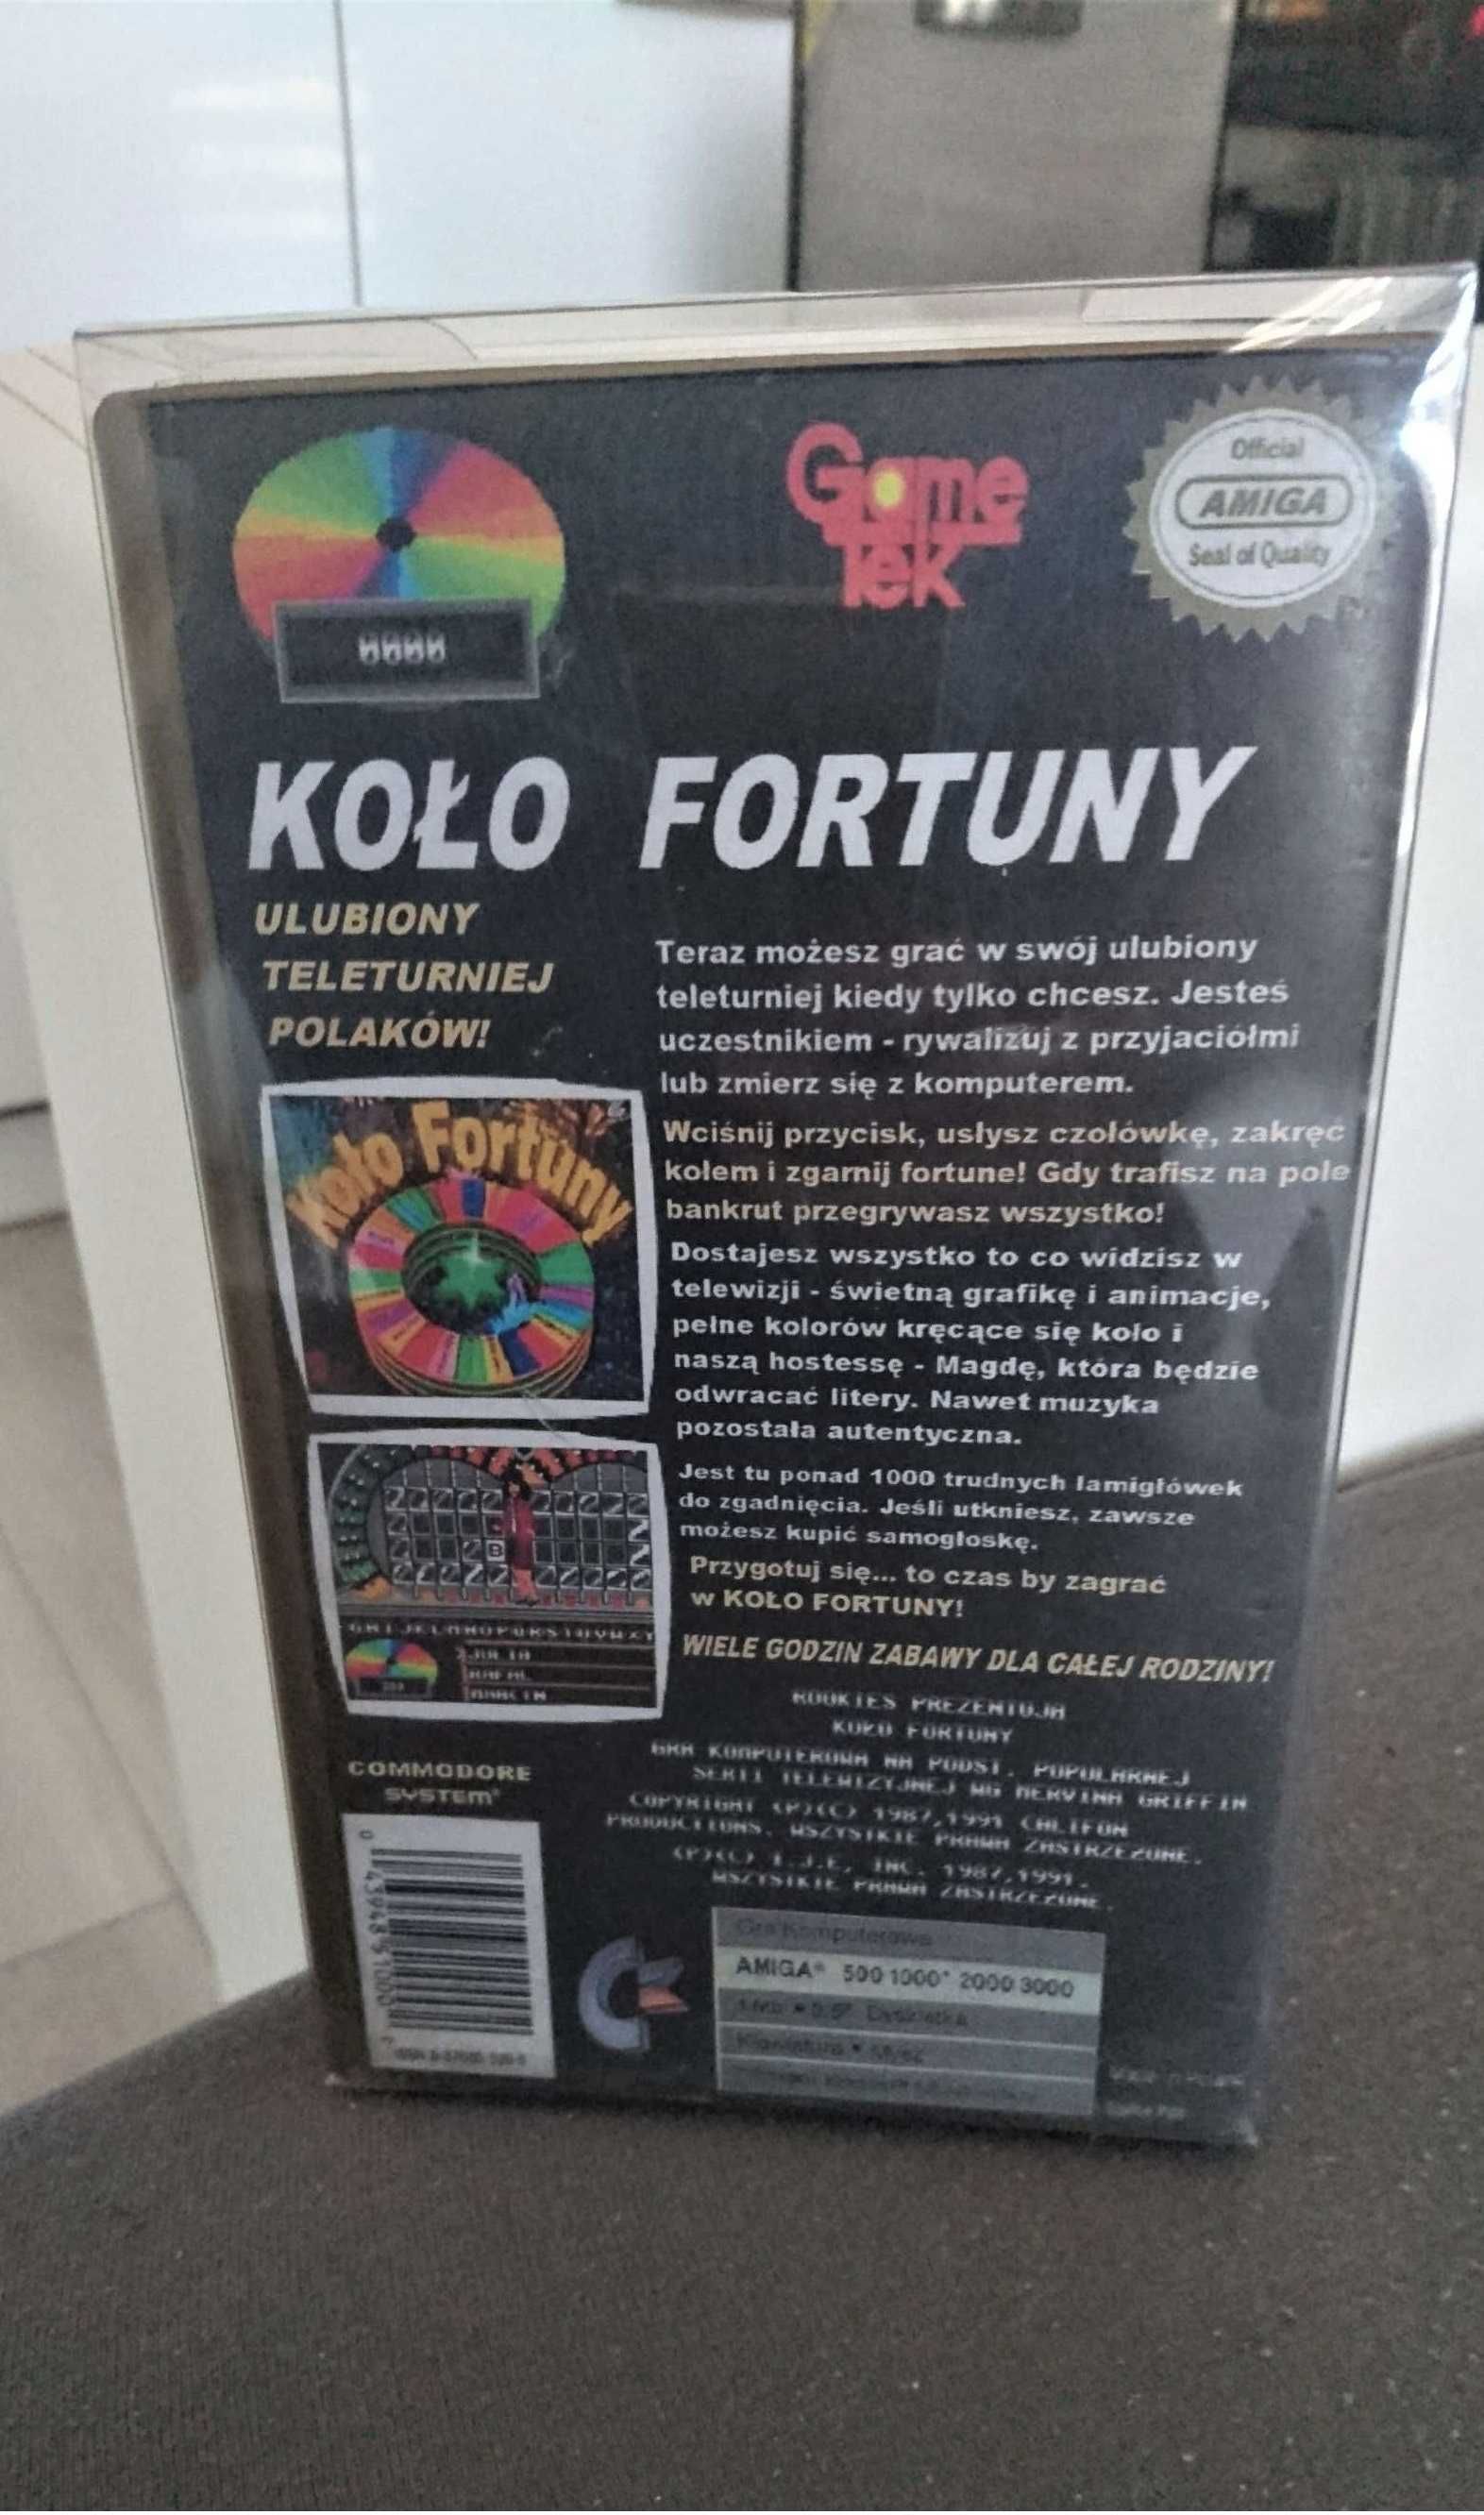 Koło Fortuny - Gry Dyskietki Dla Amiga 500 / 600 / 1200 Pudełko